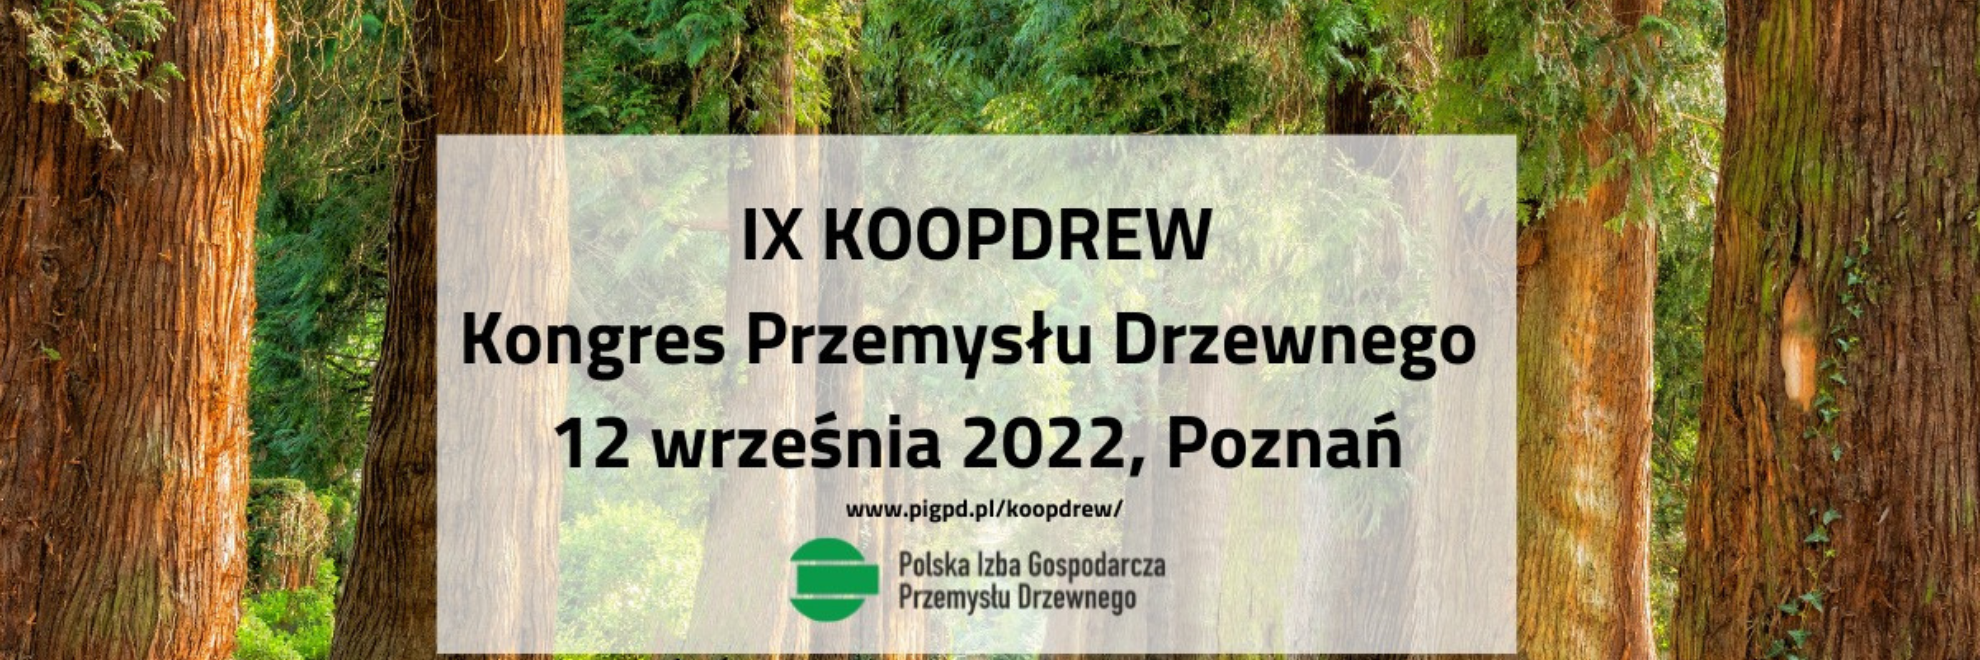 KOOPDREW IX 2022